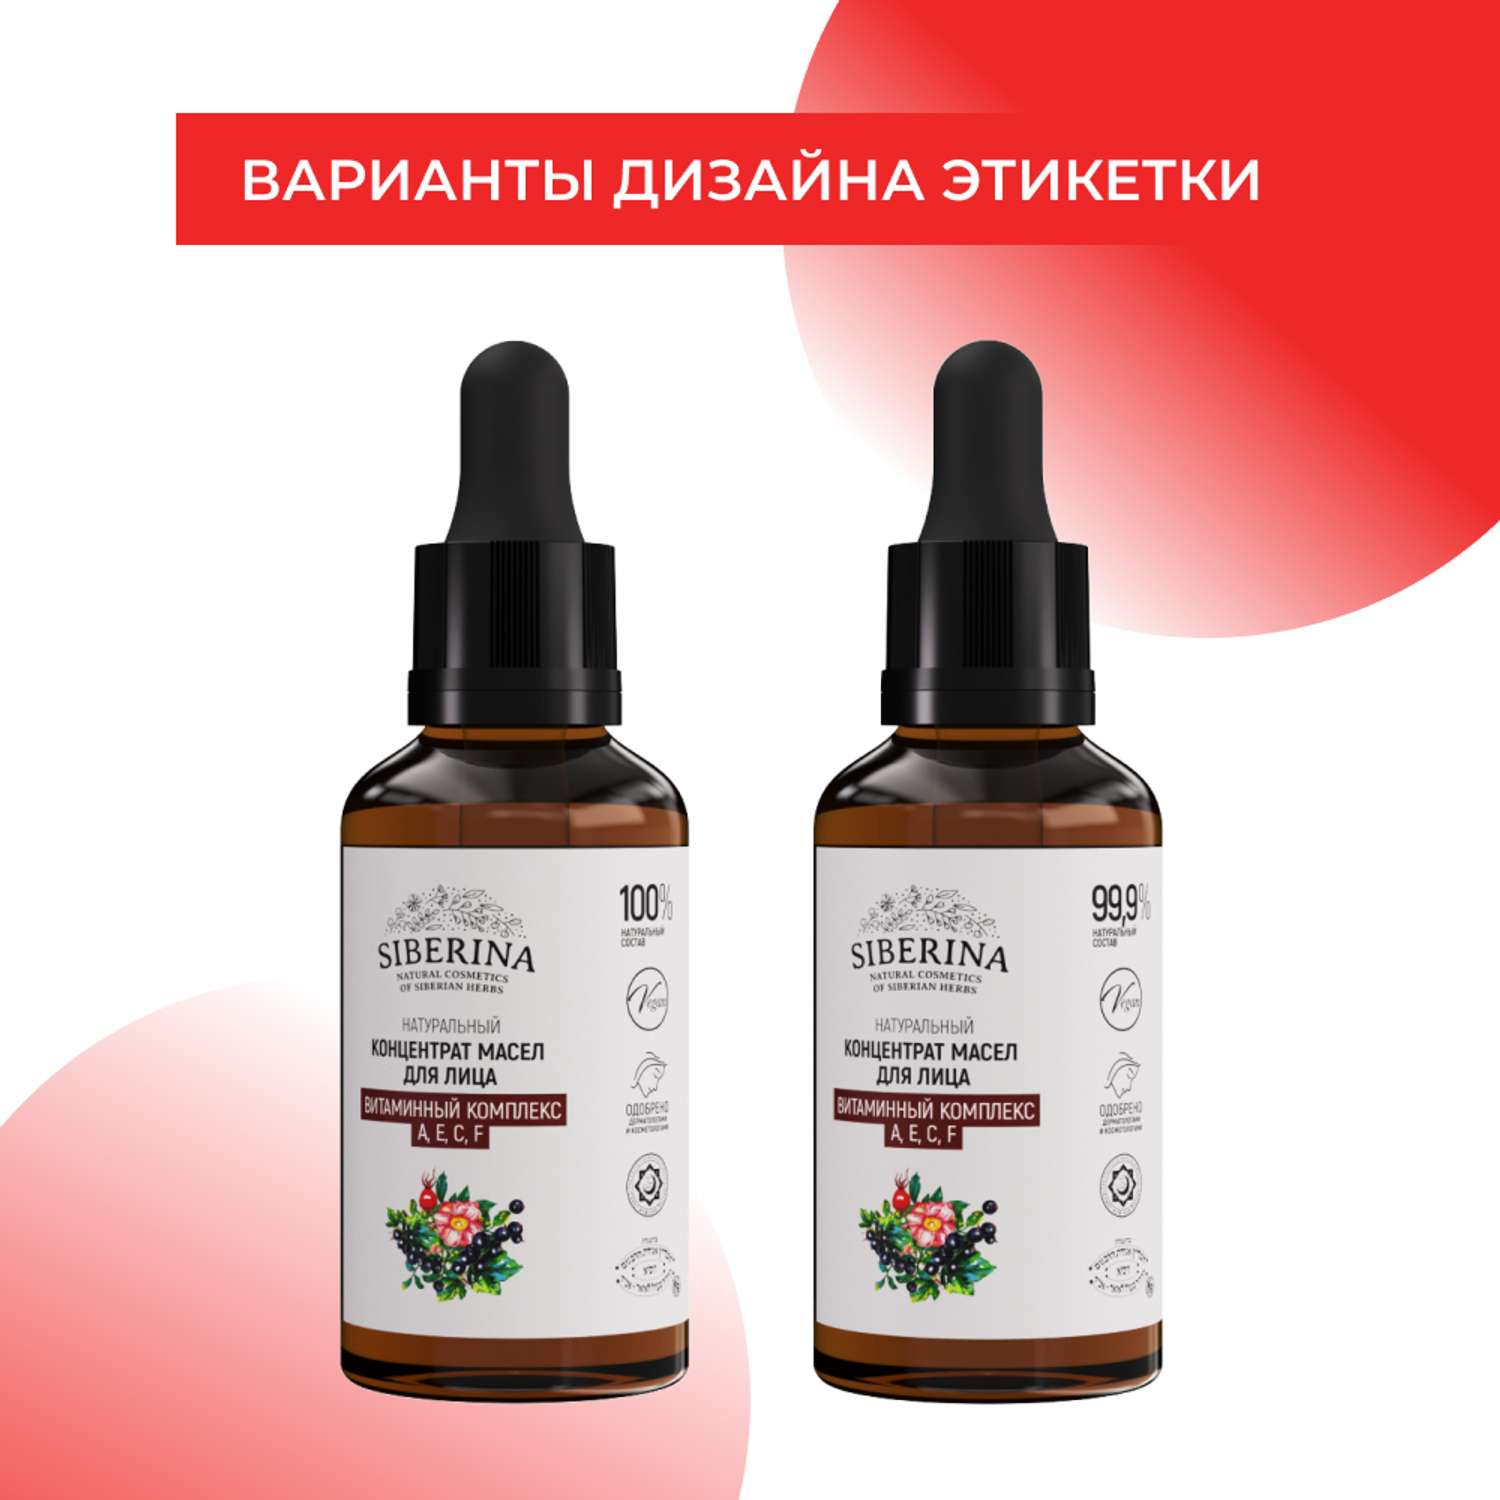 Концентрат масел Siberina натуральный «Витаминный комплекс А Е С F» для лица и волос 30 мл - фото 9